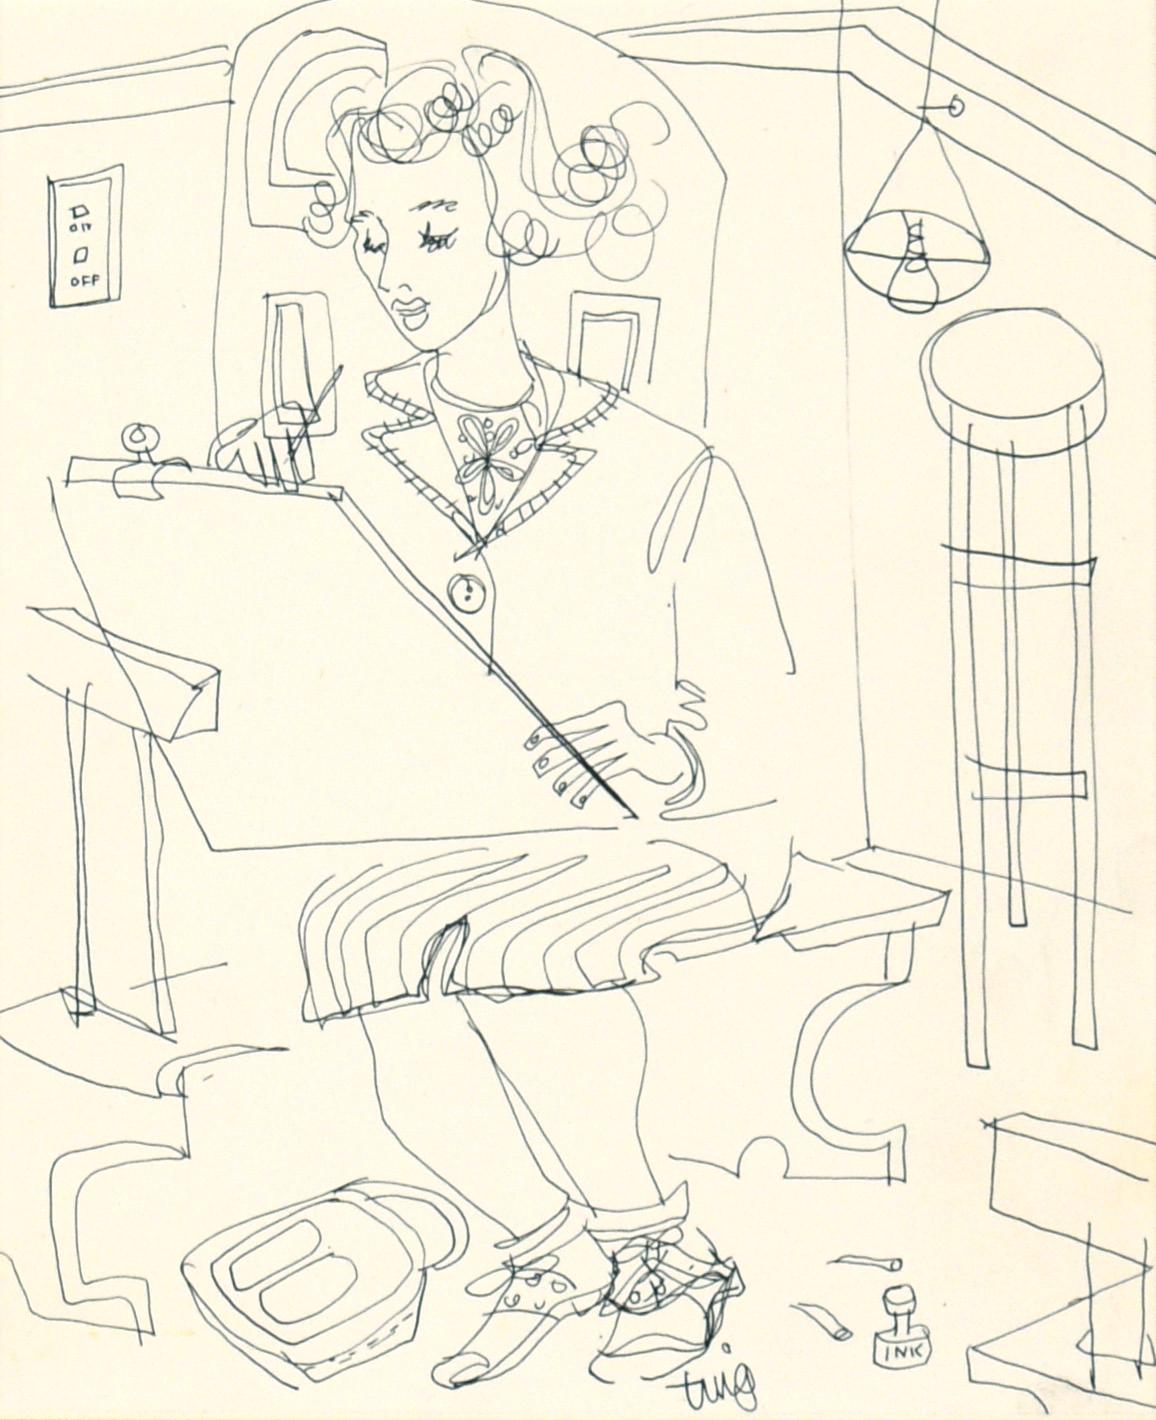 The Artist at Her Easel - Figürliches Zeichnen mit Stift auf Papier

Stilisierte figurative Zeichnung des unbekannten Künstlers 